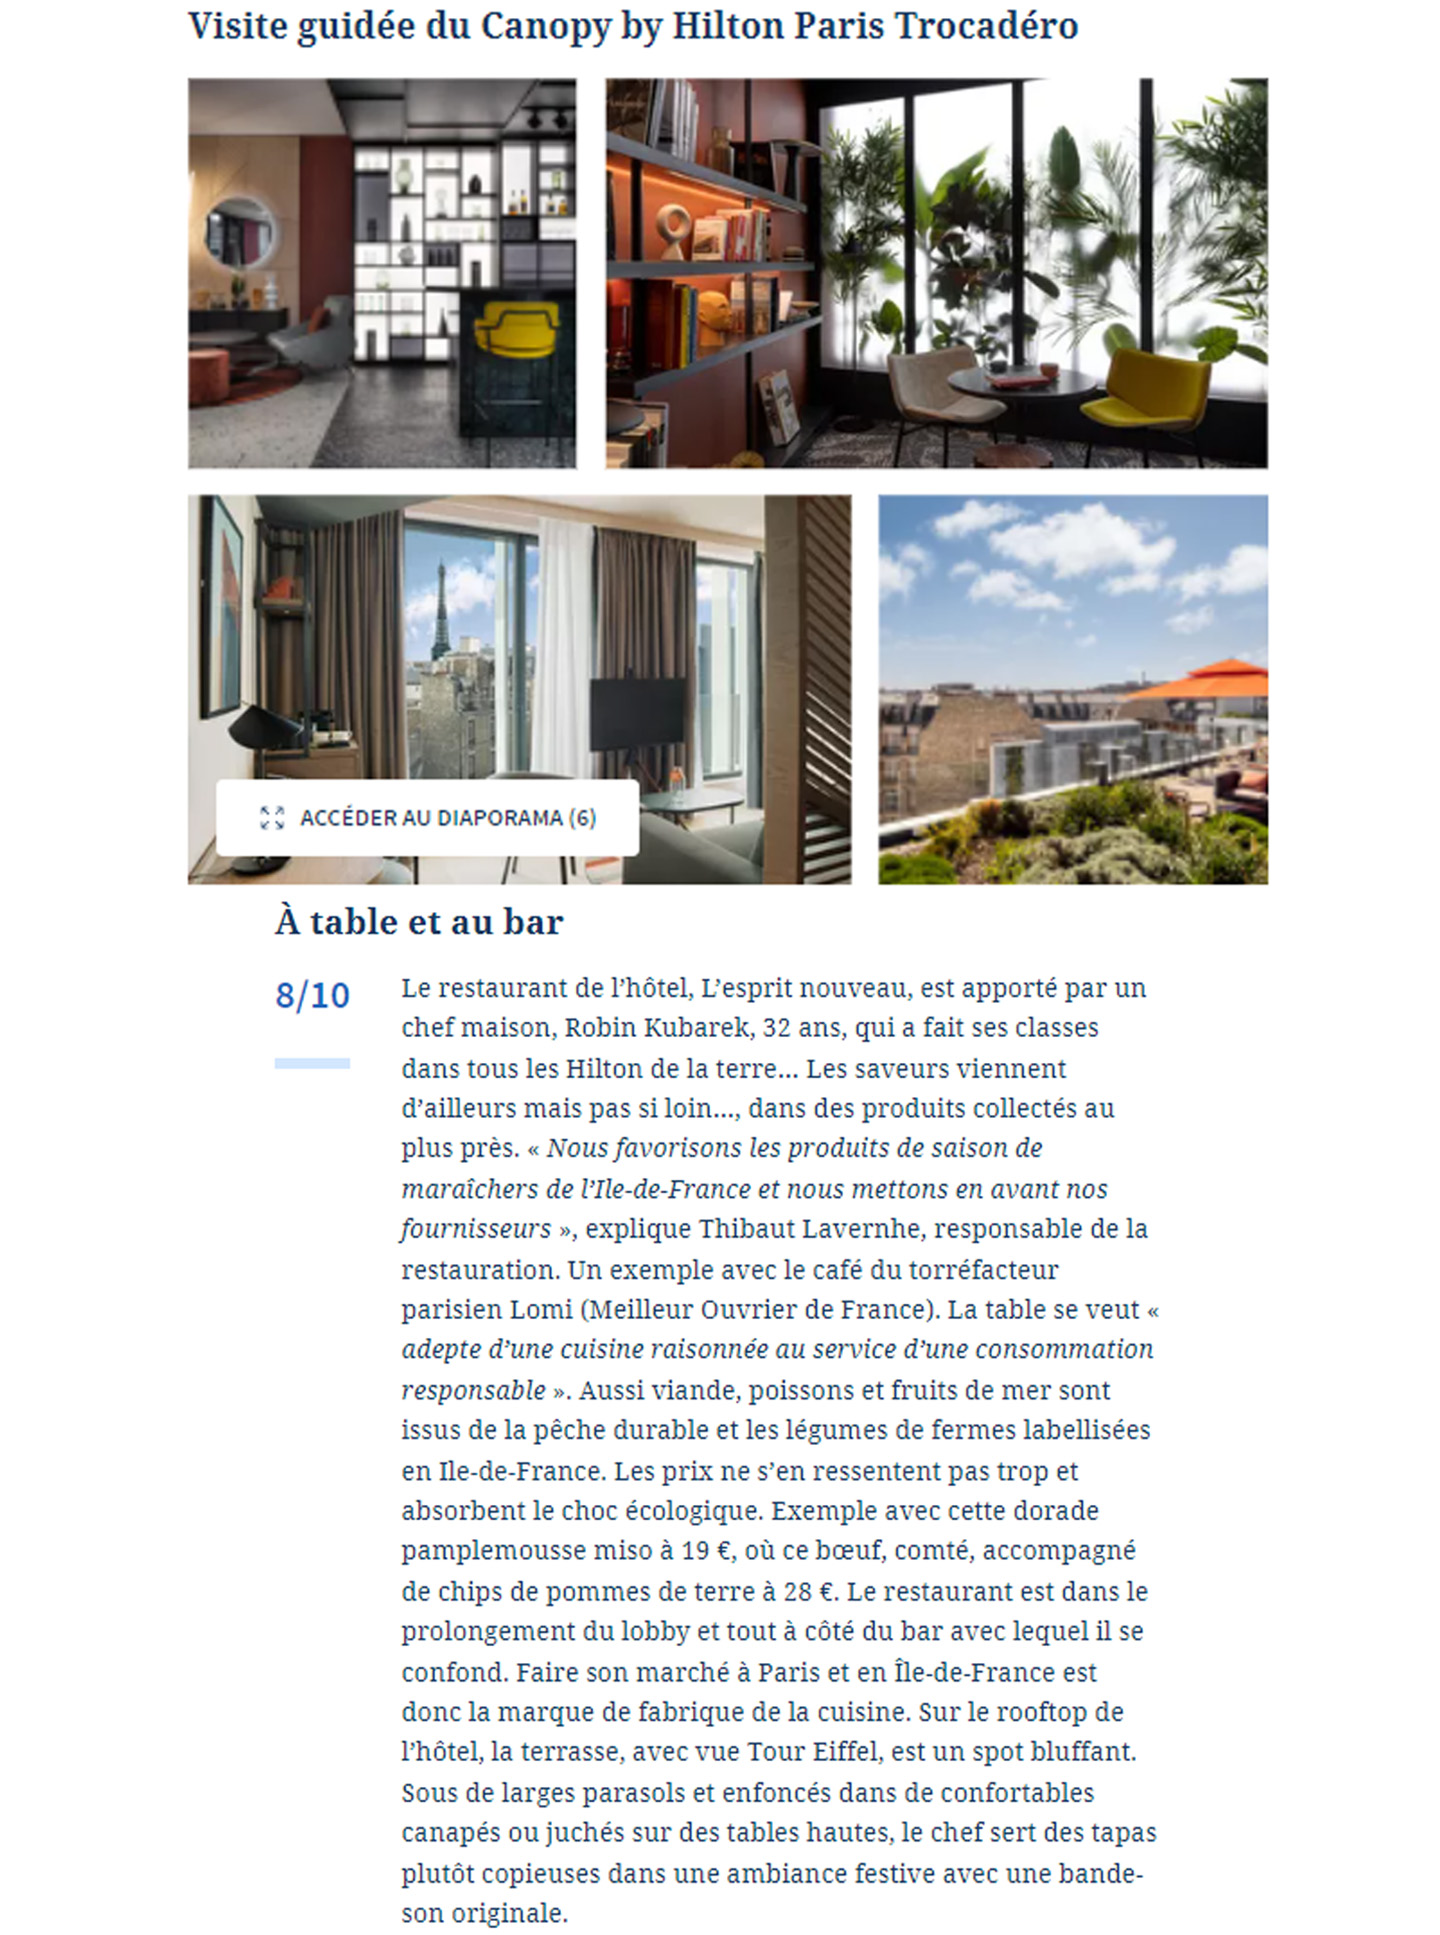 Article sur le Canopy by Hilton Paris Trocadéro réalisé par le studio jean-Philippe Nuel dans le magazine Le Figaro, nouvel hotel lifestyle, architecture d'intérieur de luxe, paris centre, hotel de luxe français